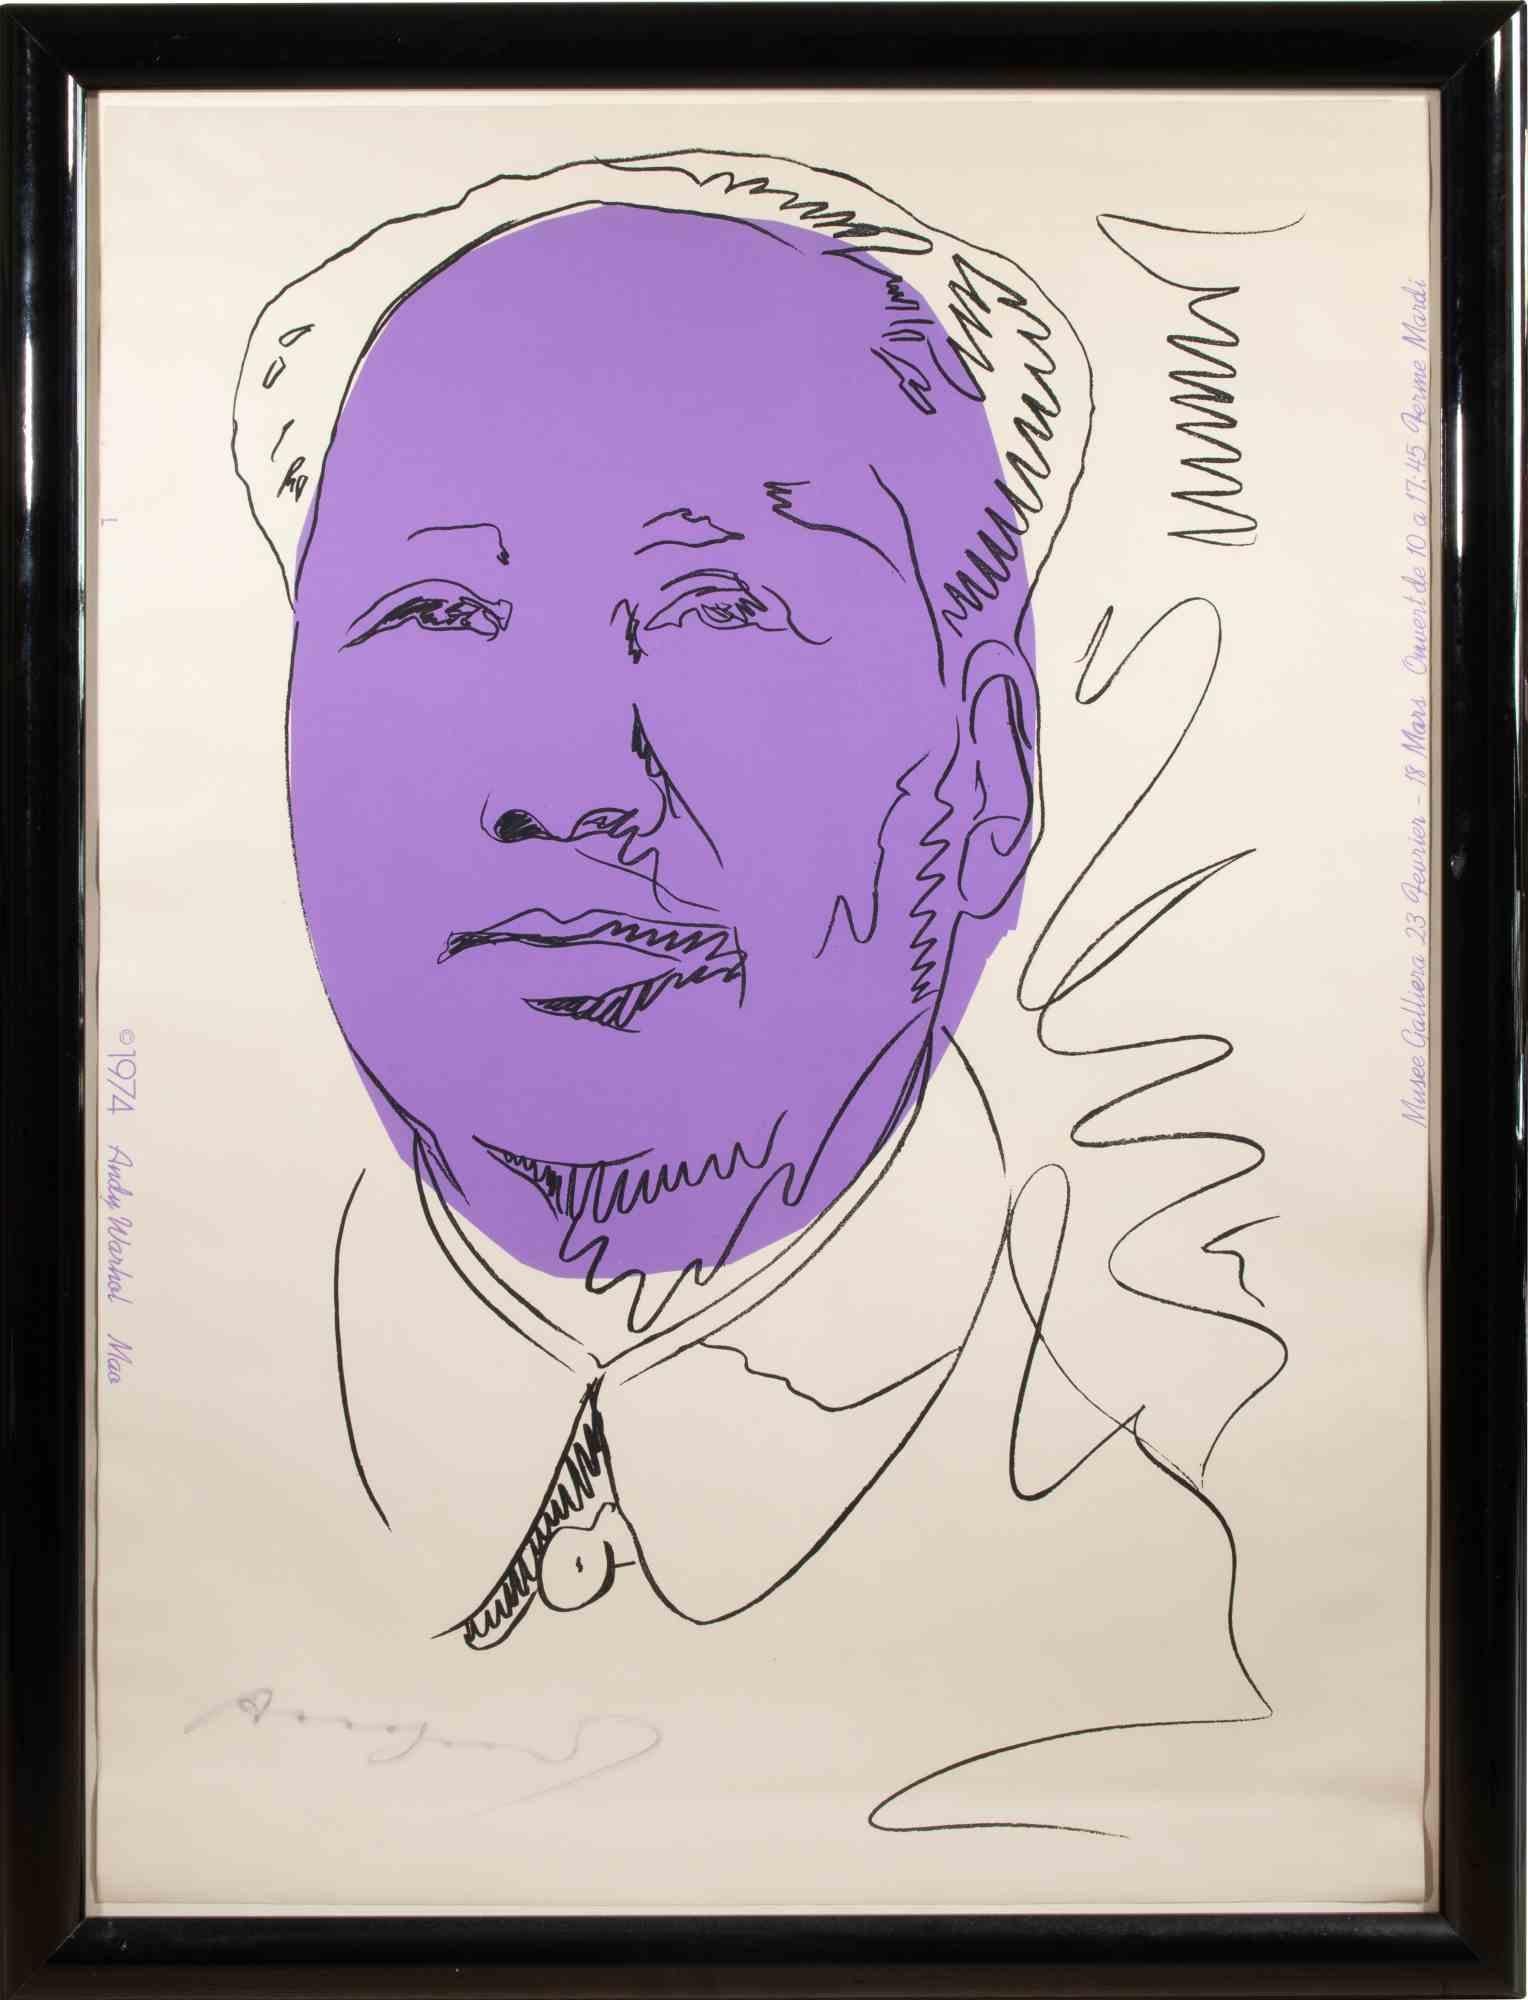 Mao ist ein zeitgenössisches Kunstwerk von Andy Warhol aus dem Jahr 1974.

Farbsiebdruck auf Tapete.

Inklusive Rahmen: 113 x 86 x 3 cm

Handsigniert unten links.

Prov. Galerie Vayhinger, Radolfzell (Rahmenrückseite mit